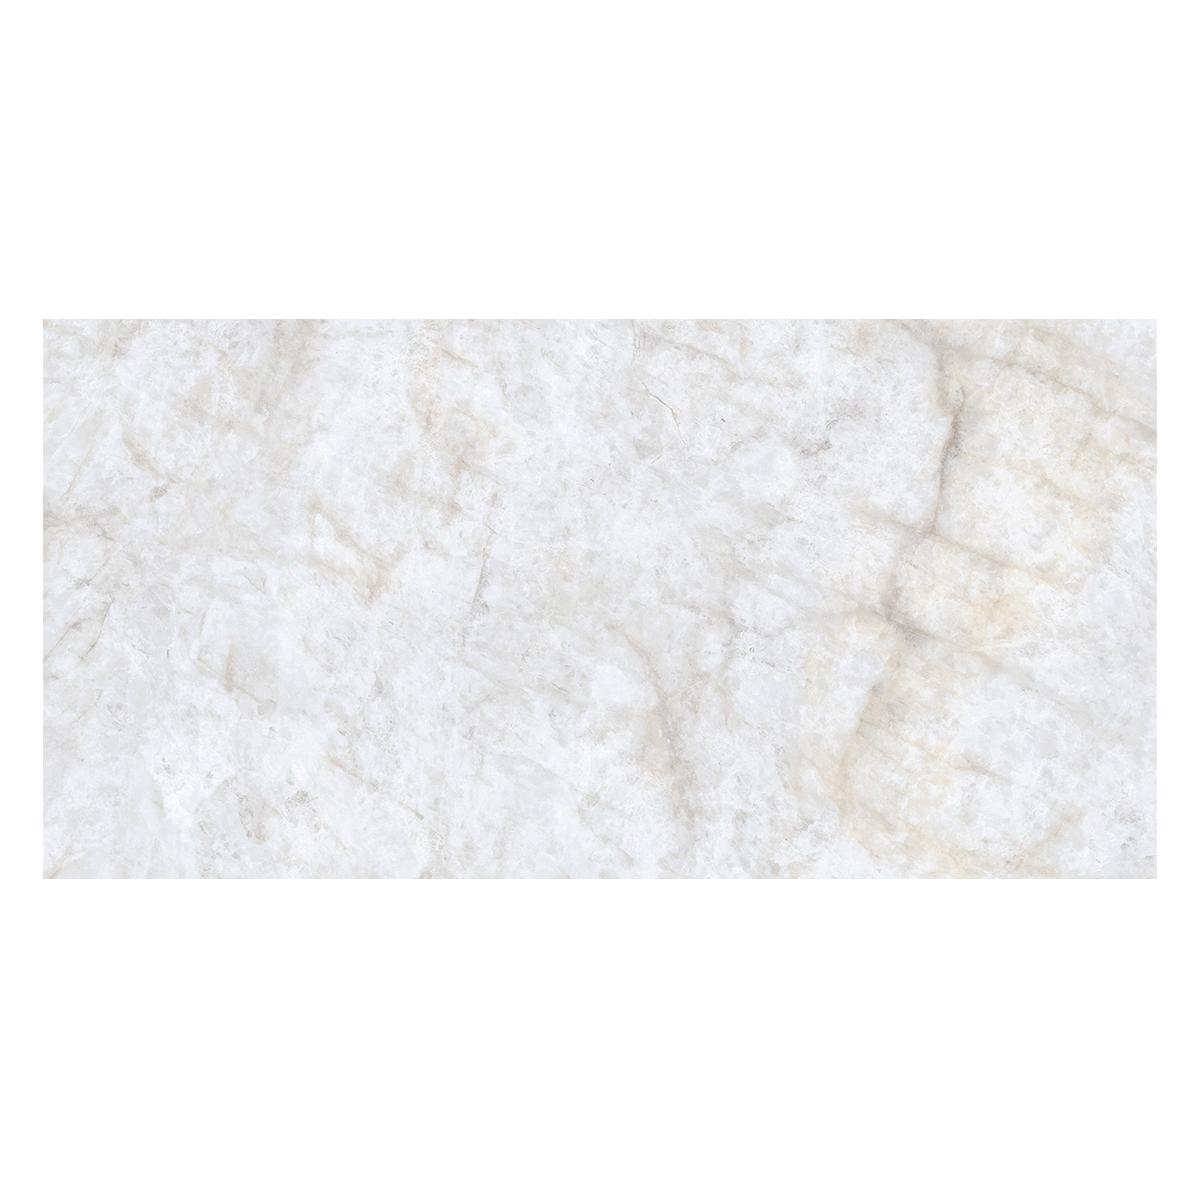 Porcelanato Patagonia Blanco Pulido - 60X120 cm - 1.44 m2